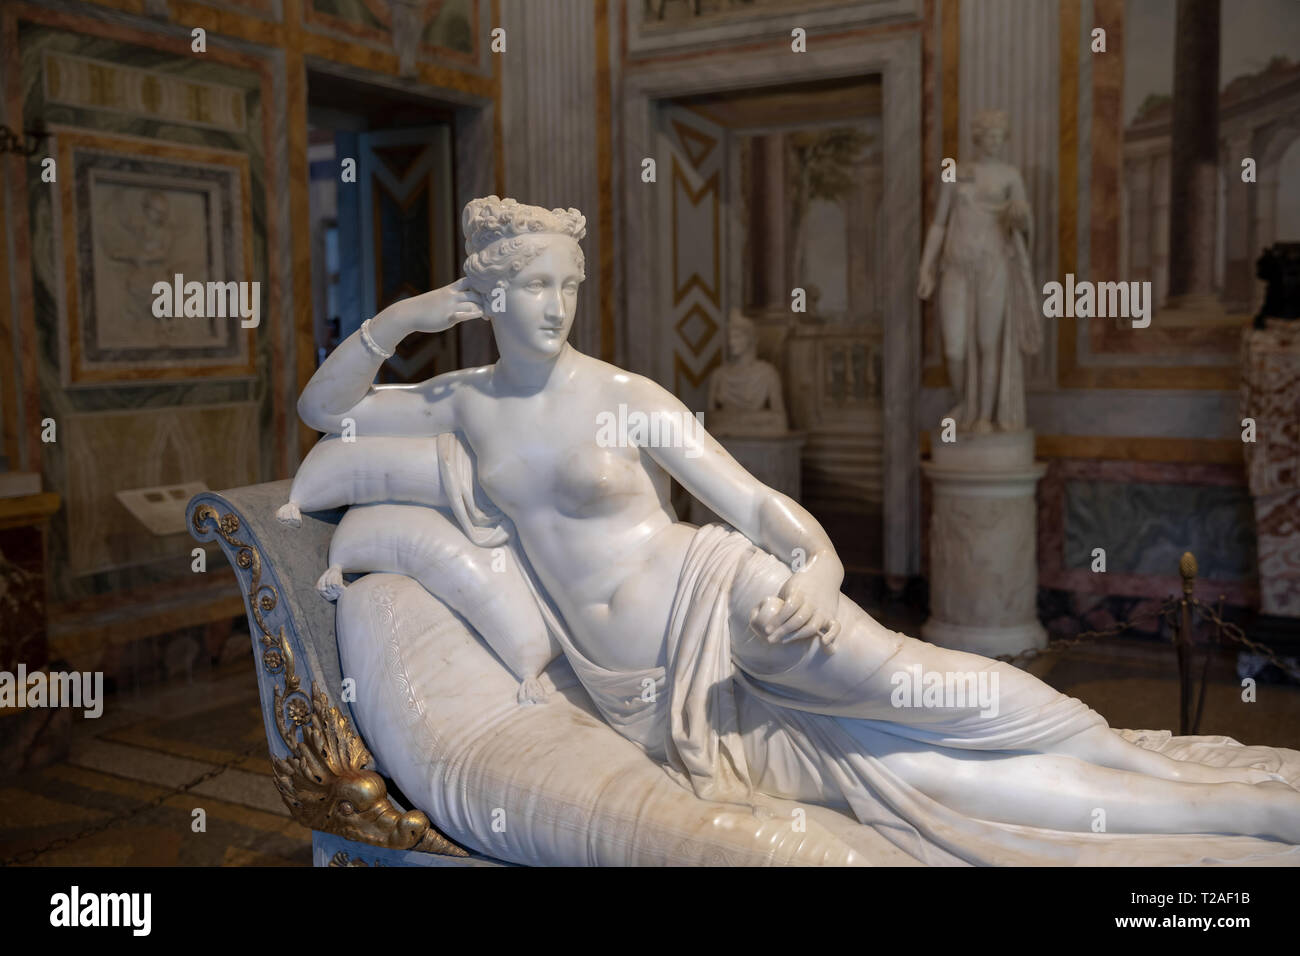 Rome, Italy - June 22, 2018: Baroque marble sculpture Pauline Bonaparte by Antonio Canova in Galleria Borghese of Villa Borghese Stock Photo